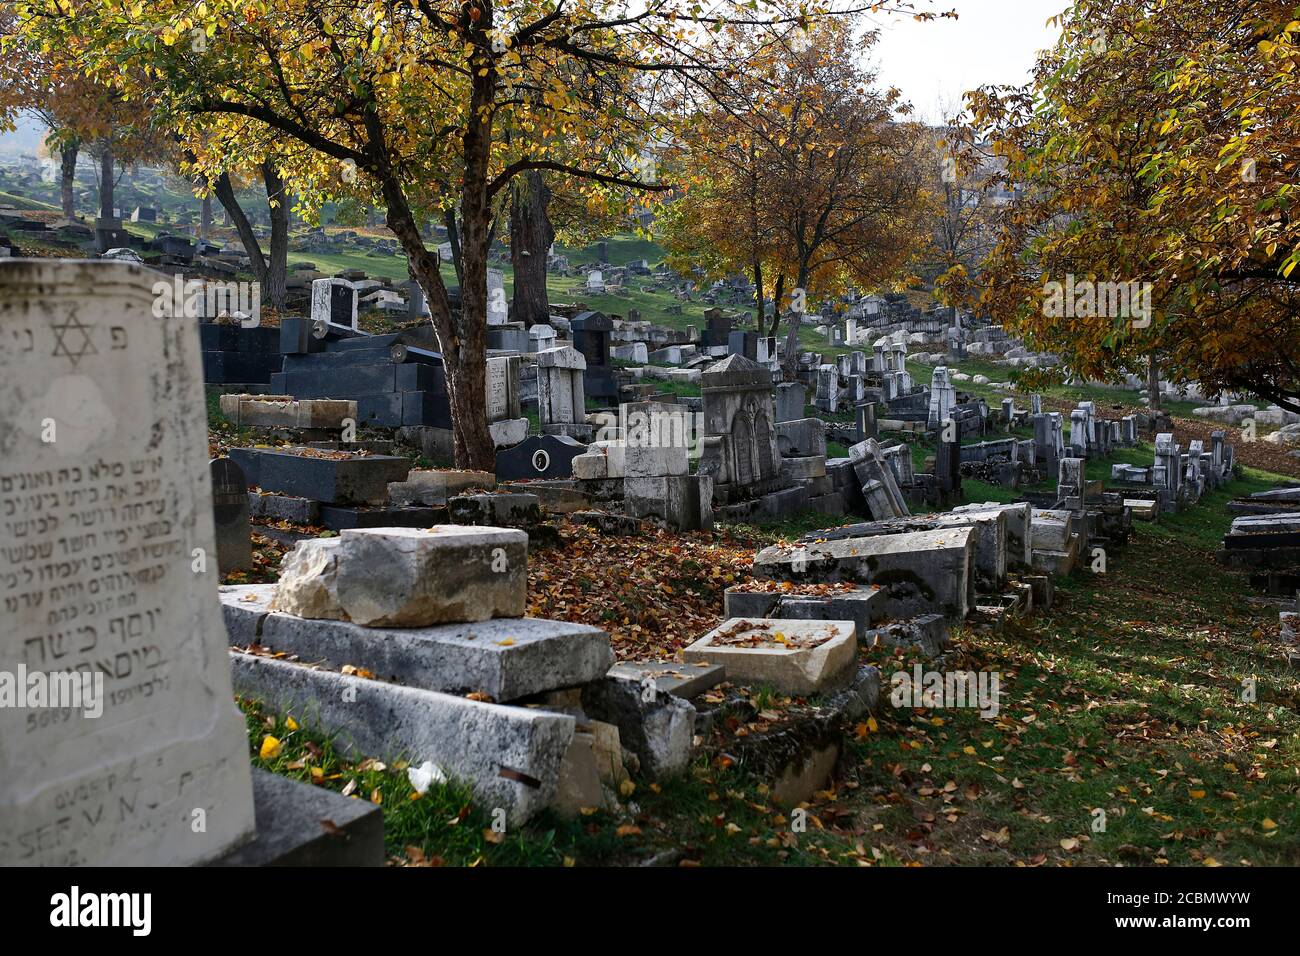 El Cementerio Judío OID es un cementerio de casi 500 años de antigüedad en Sarajevo, Bosnia y Herzegovina. Foto de stock